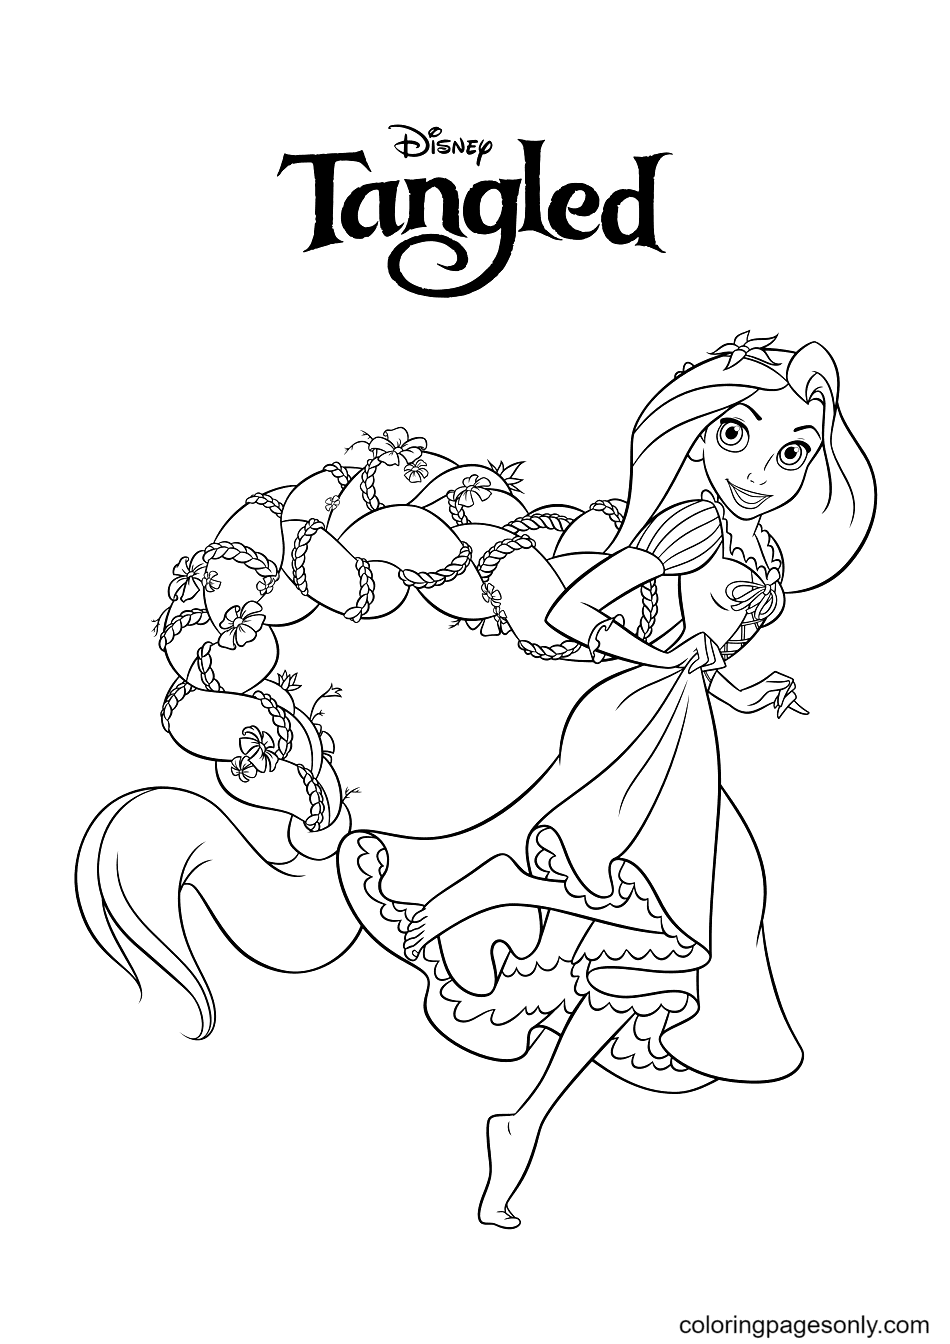 Desenho para colorir da Princesa Rapunzel da Disney para imprimir